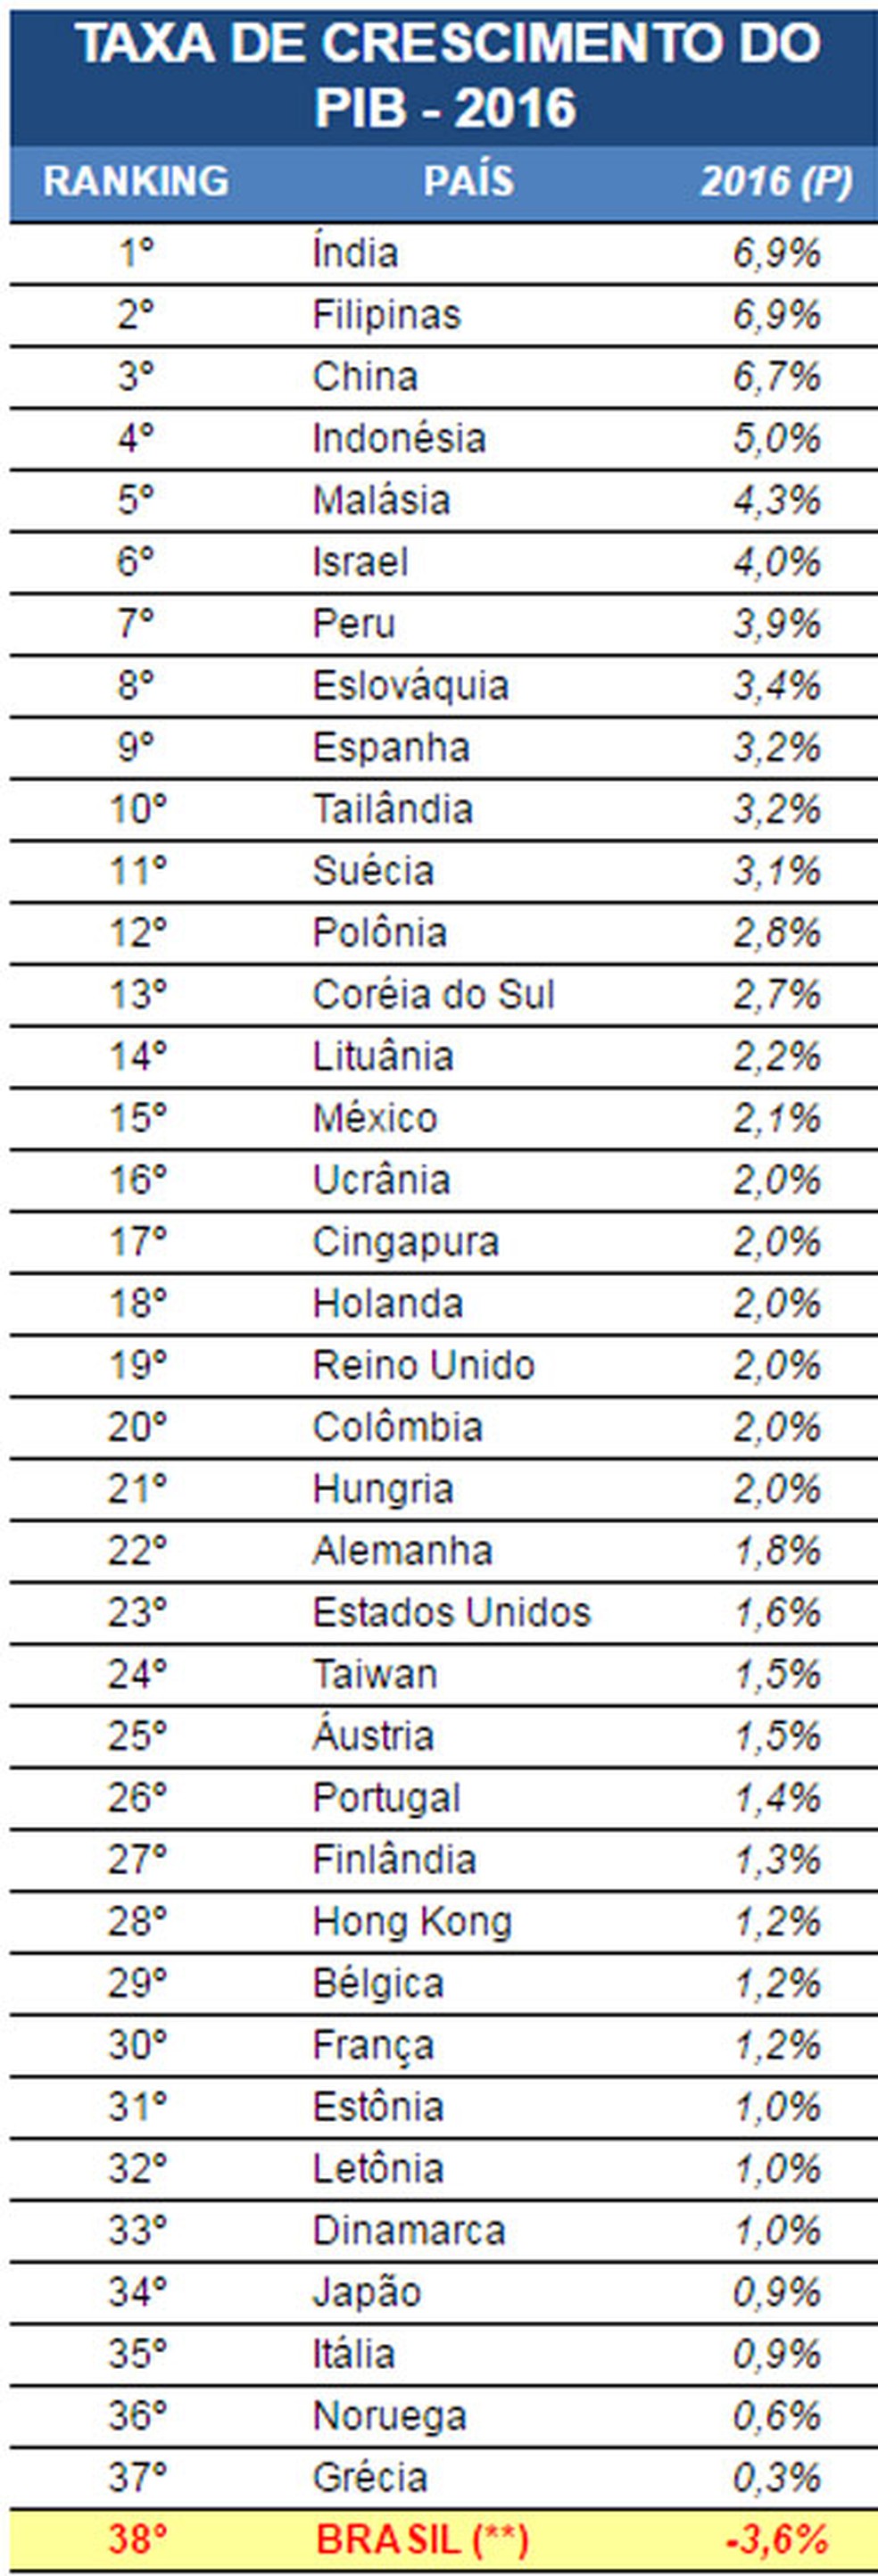 PIB do Brasil fica na lanterna em ranking com 38 países (Foto: Divulgação)